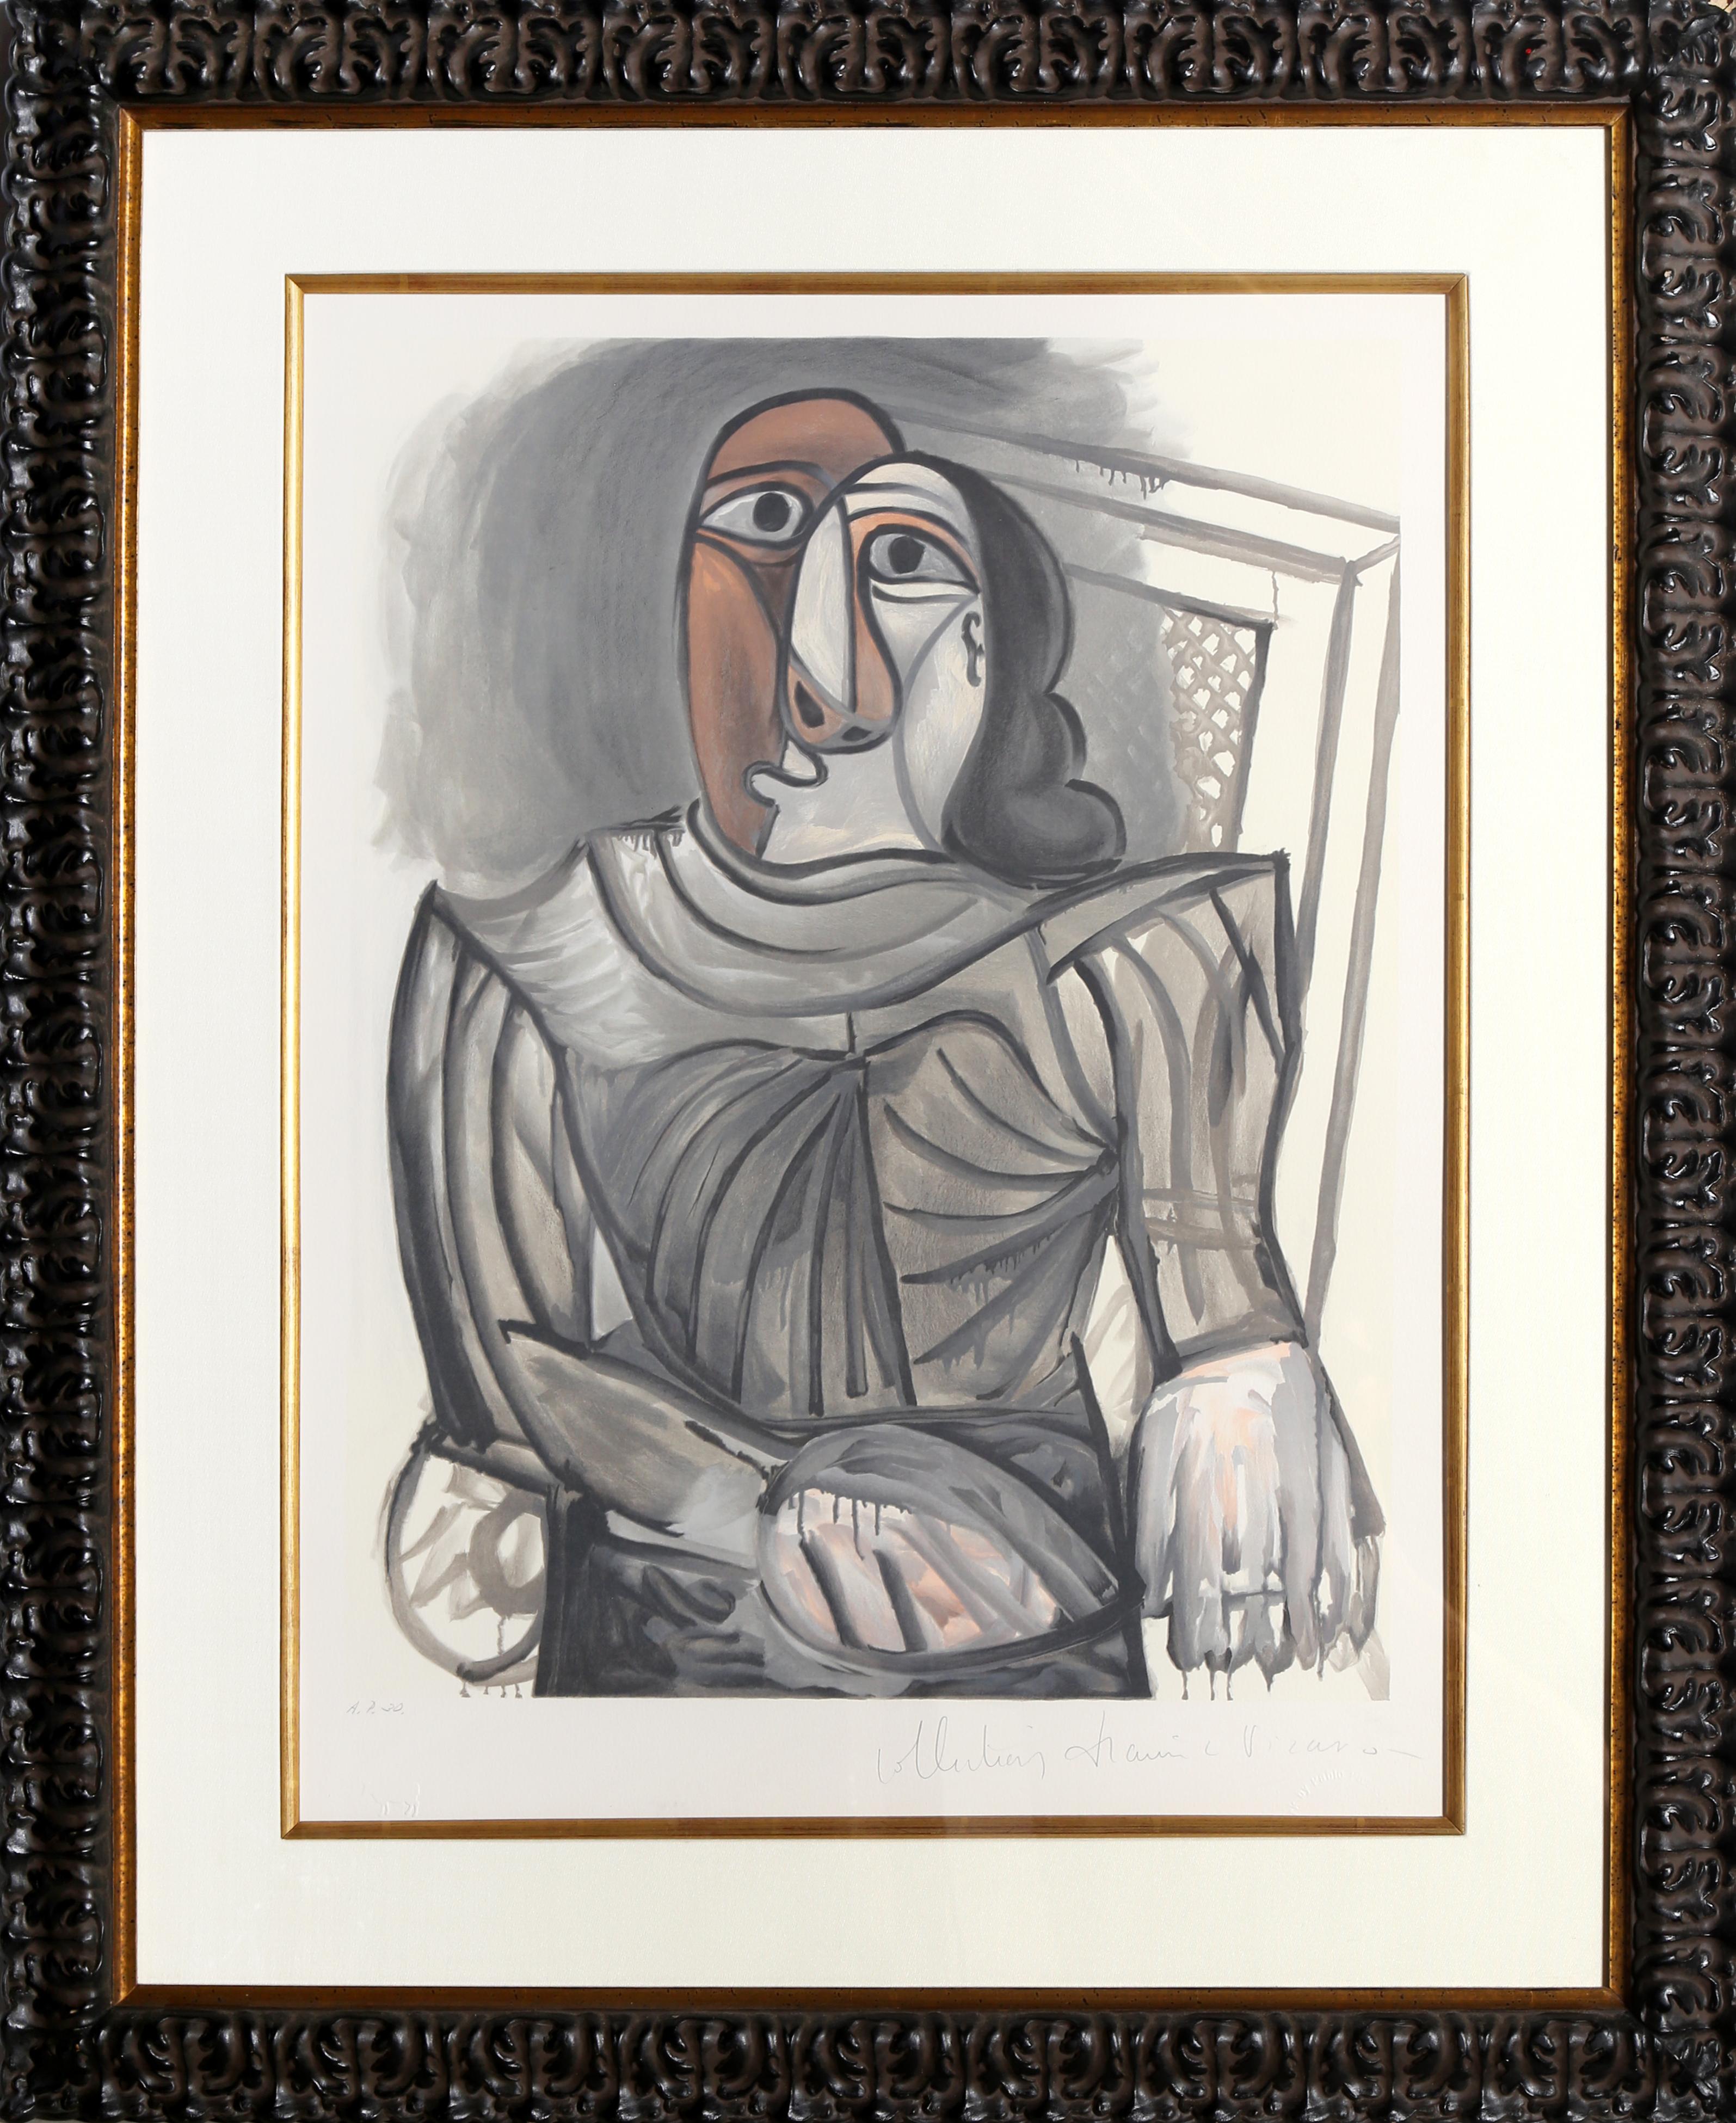 Eine Lithographie aus der Nachlasssammlung Marina Picasso nach dem Gemälde "Femme Assise a la Robe Grise" von Pablo Picasso.  Das Originalgemälde wurde 1943 fertiggestellt. In den 1970er Jahren, nach Picassos Tod, autorisierte Marina Picasso, seine